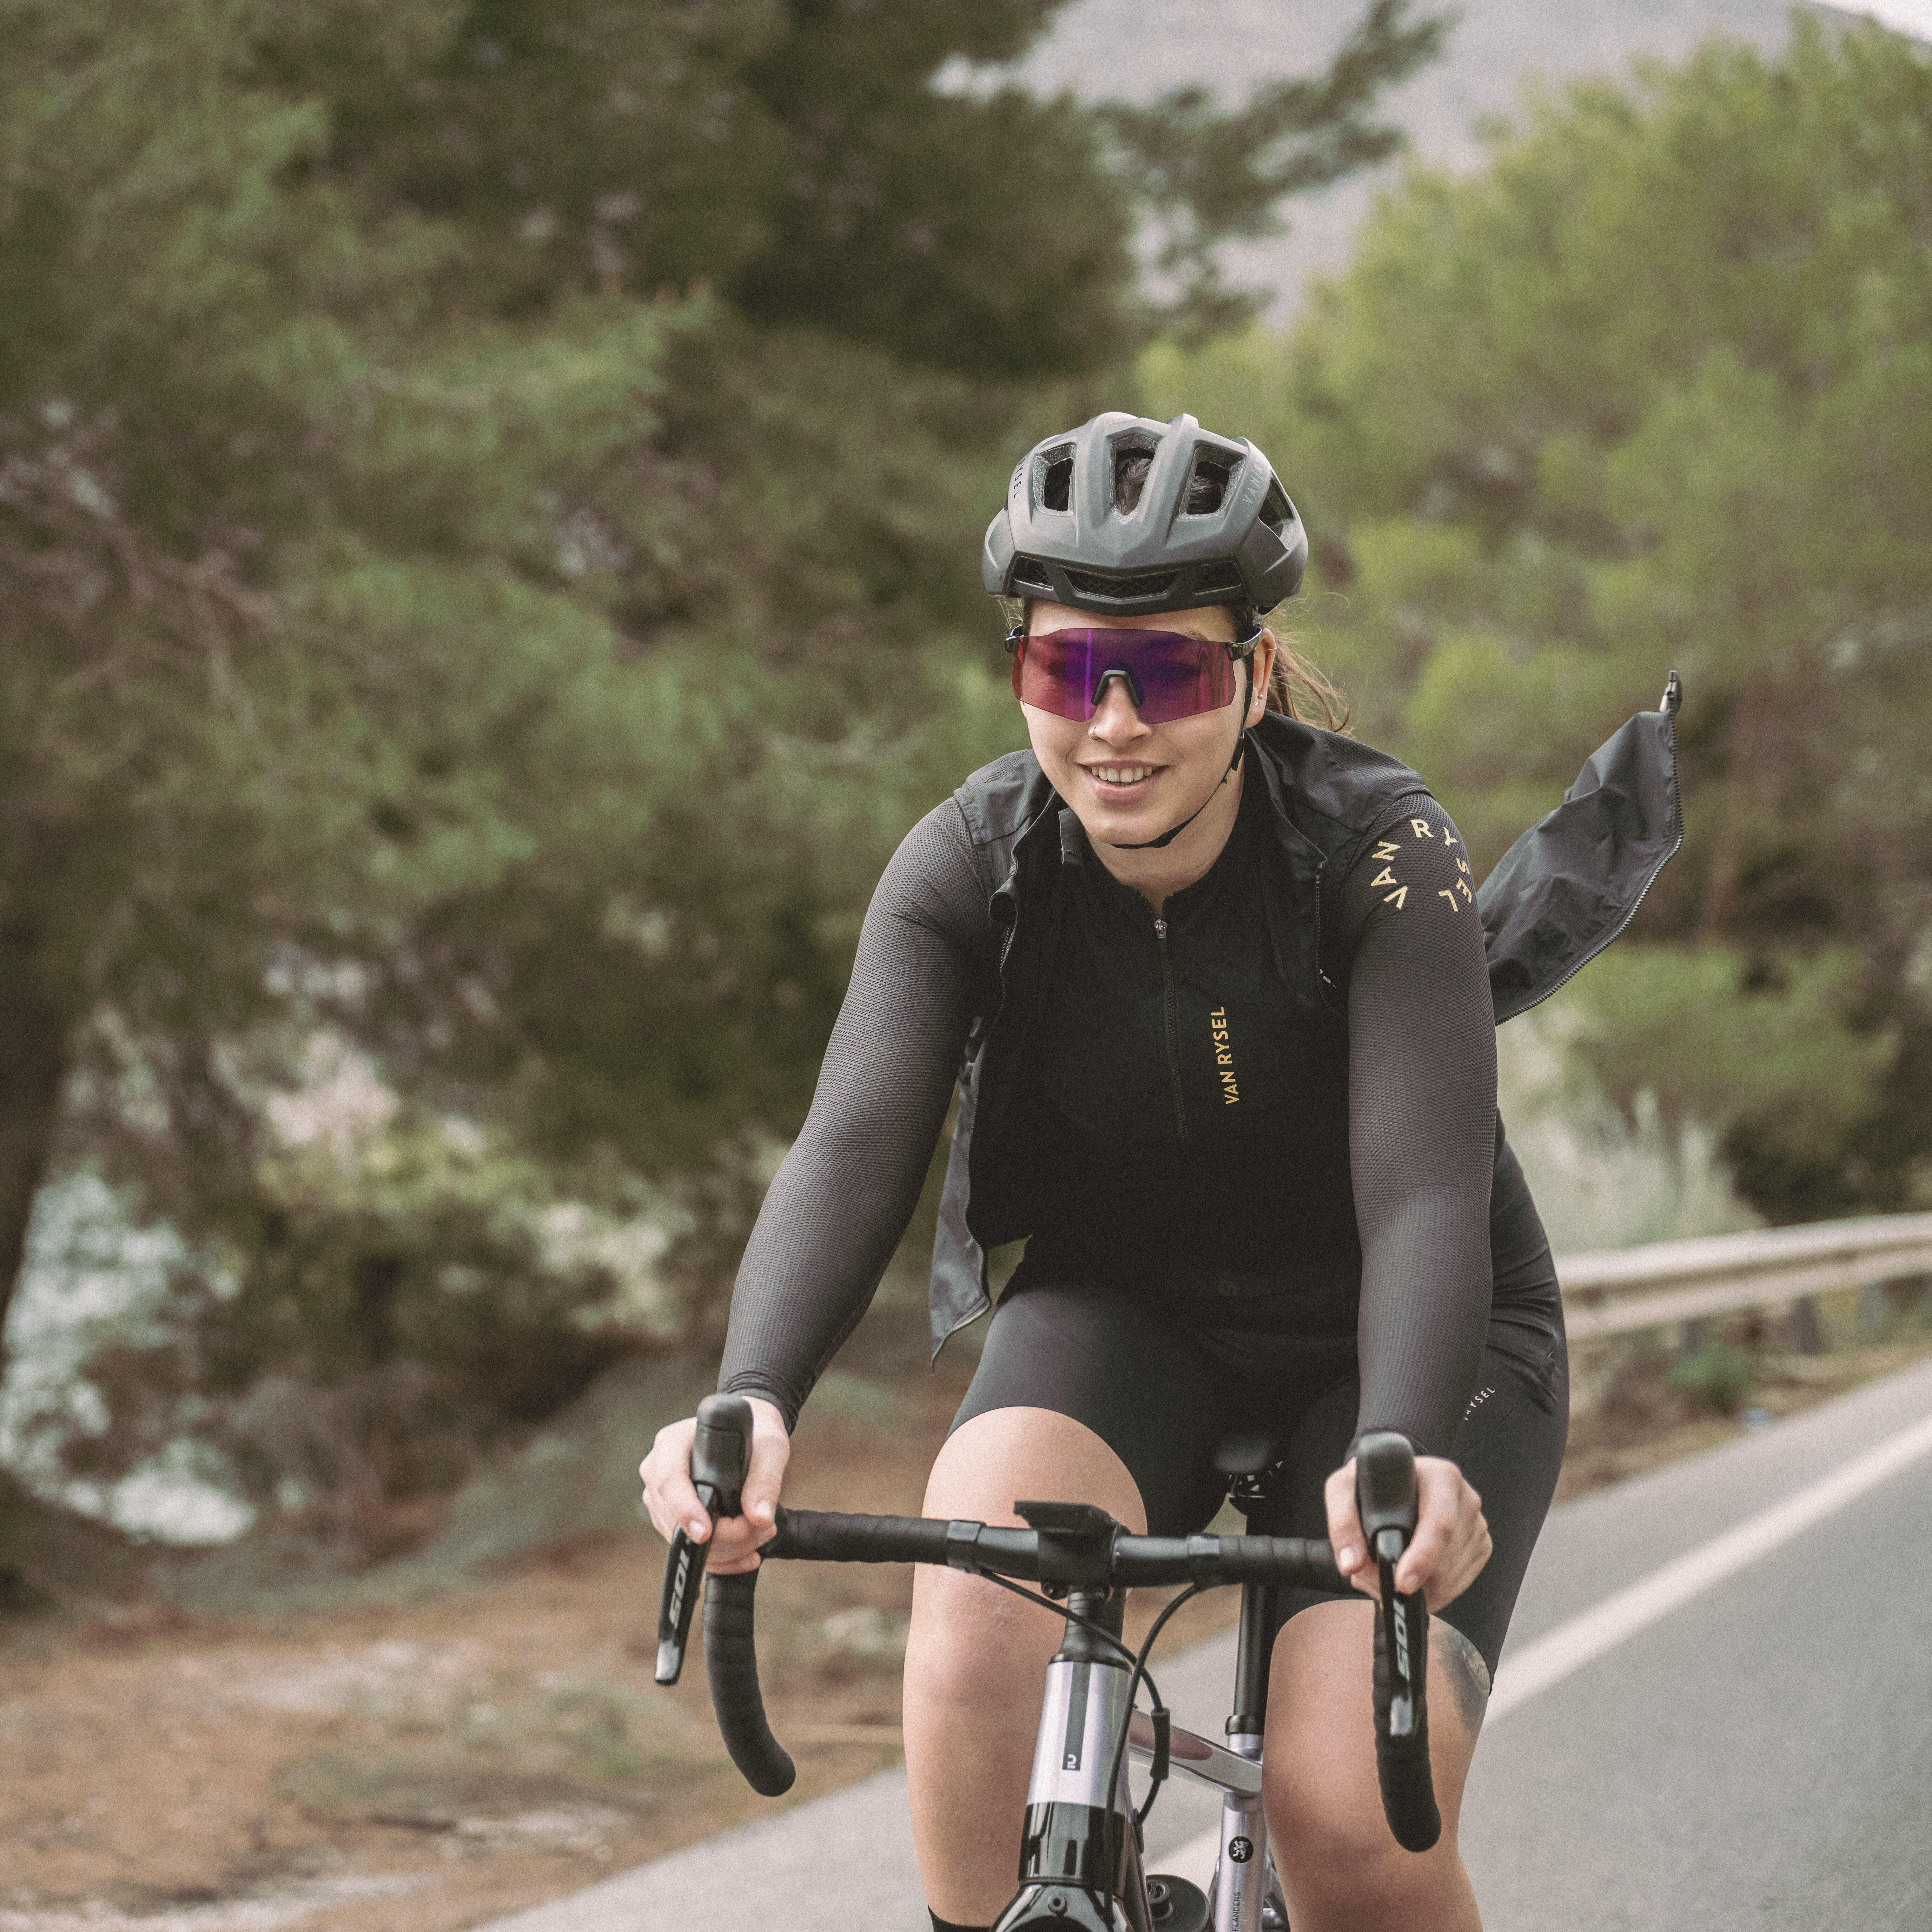 Flexible levantar práctica Tienda de ciclismo mujer | Decathlon